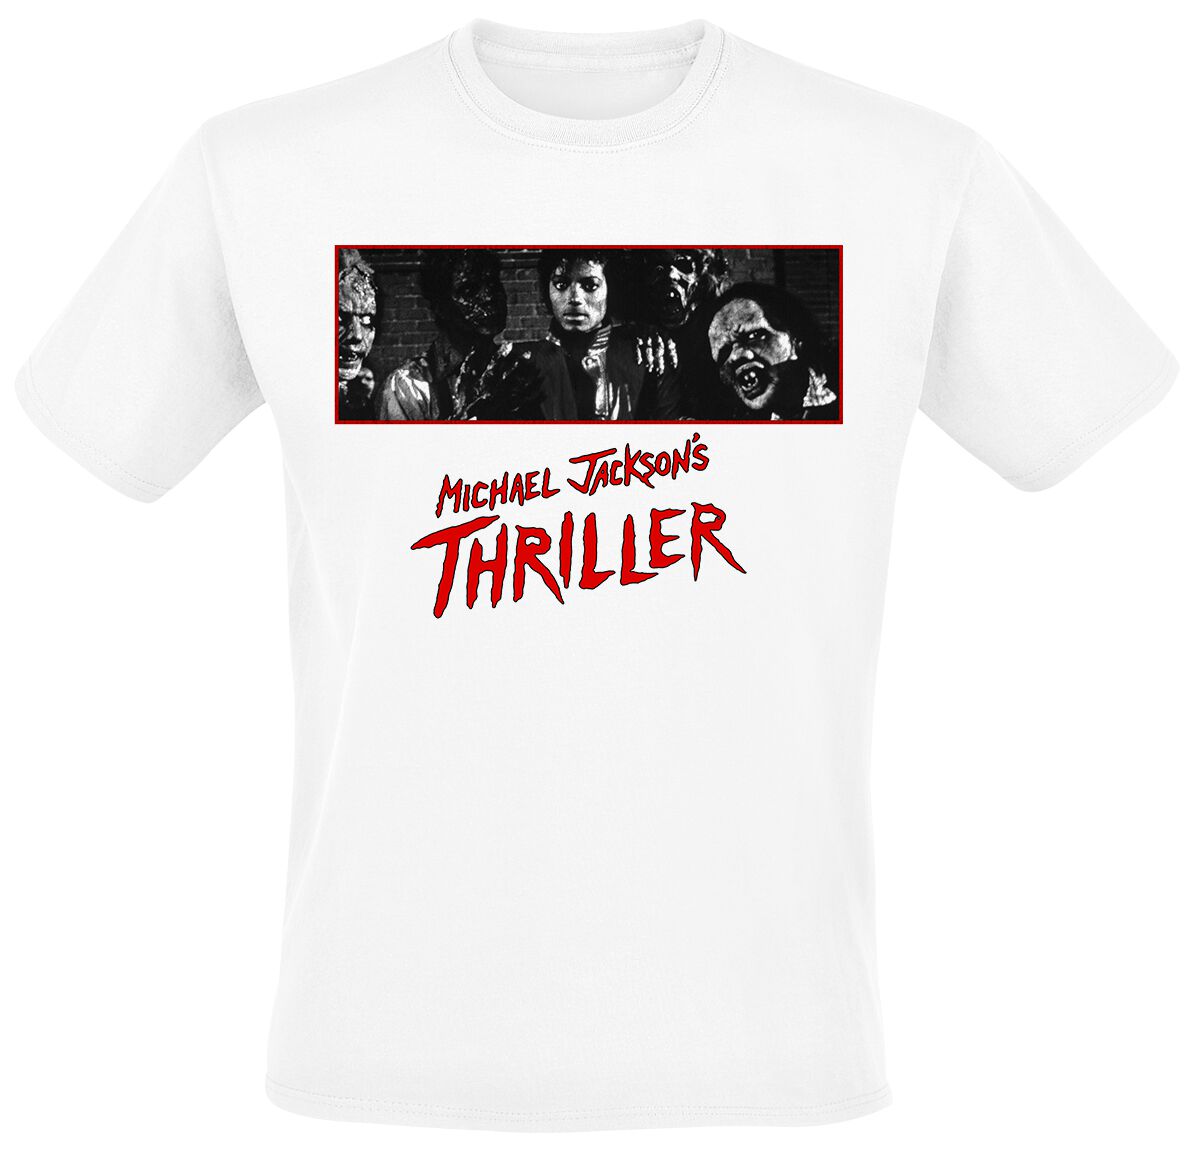 T-Shirt Manches courtes de Michael Jackson - Thriller BW Photo - S à 3XL - pour Homme - blanc